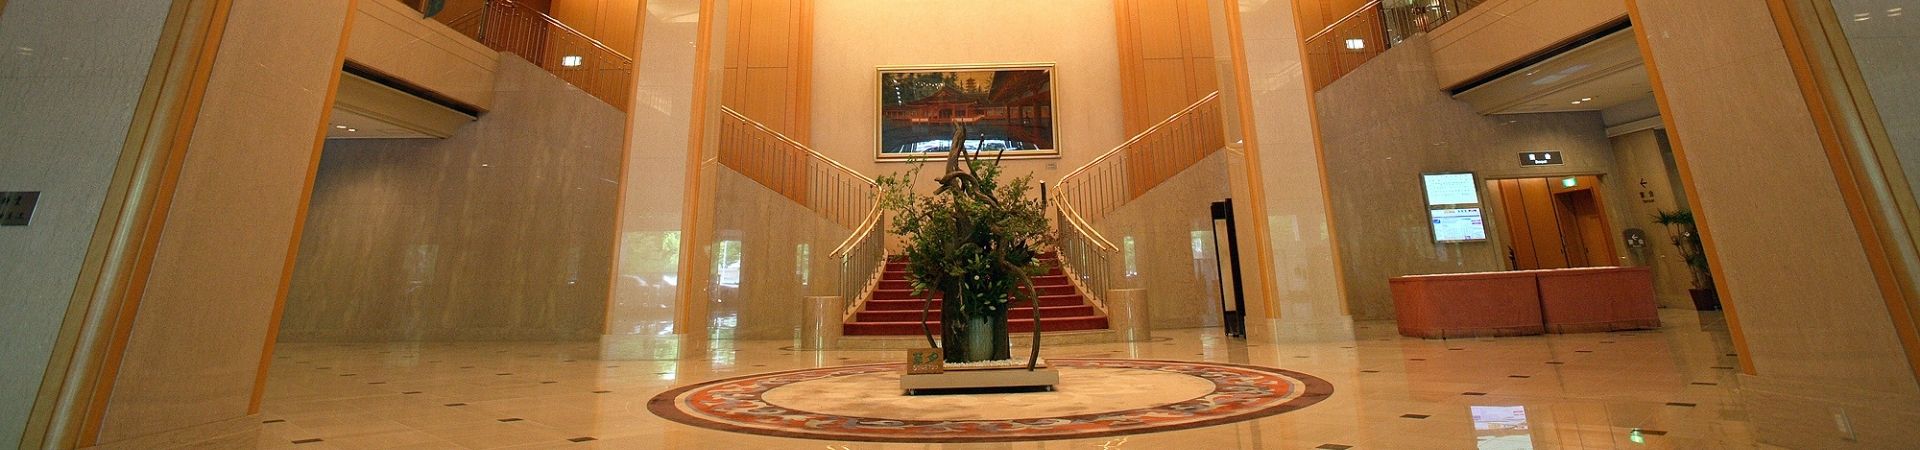 Image of Rihga Royal Hotel Hiroshima